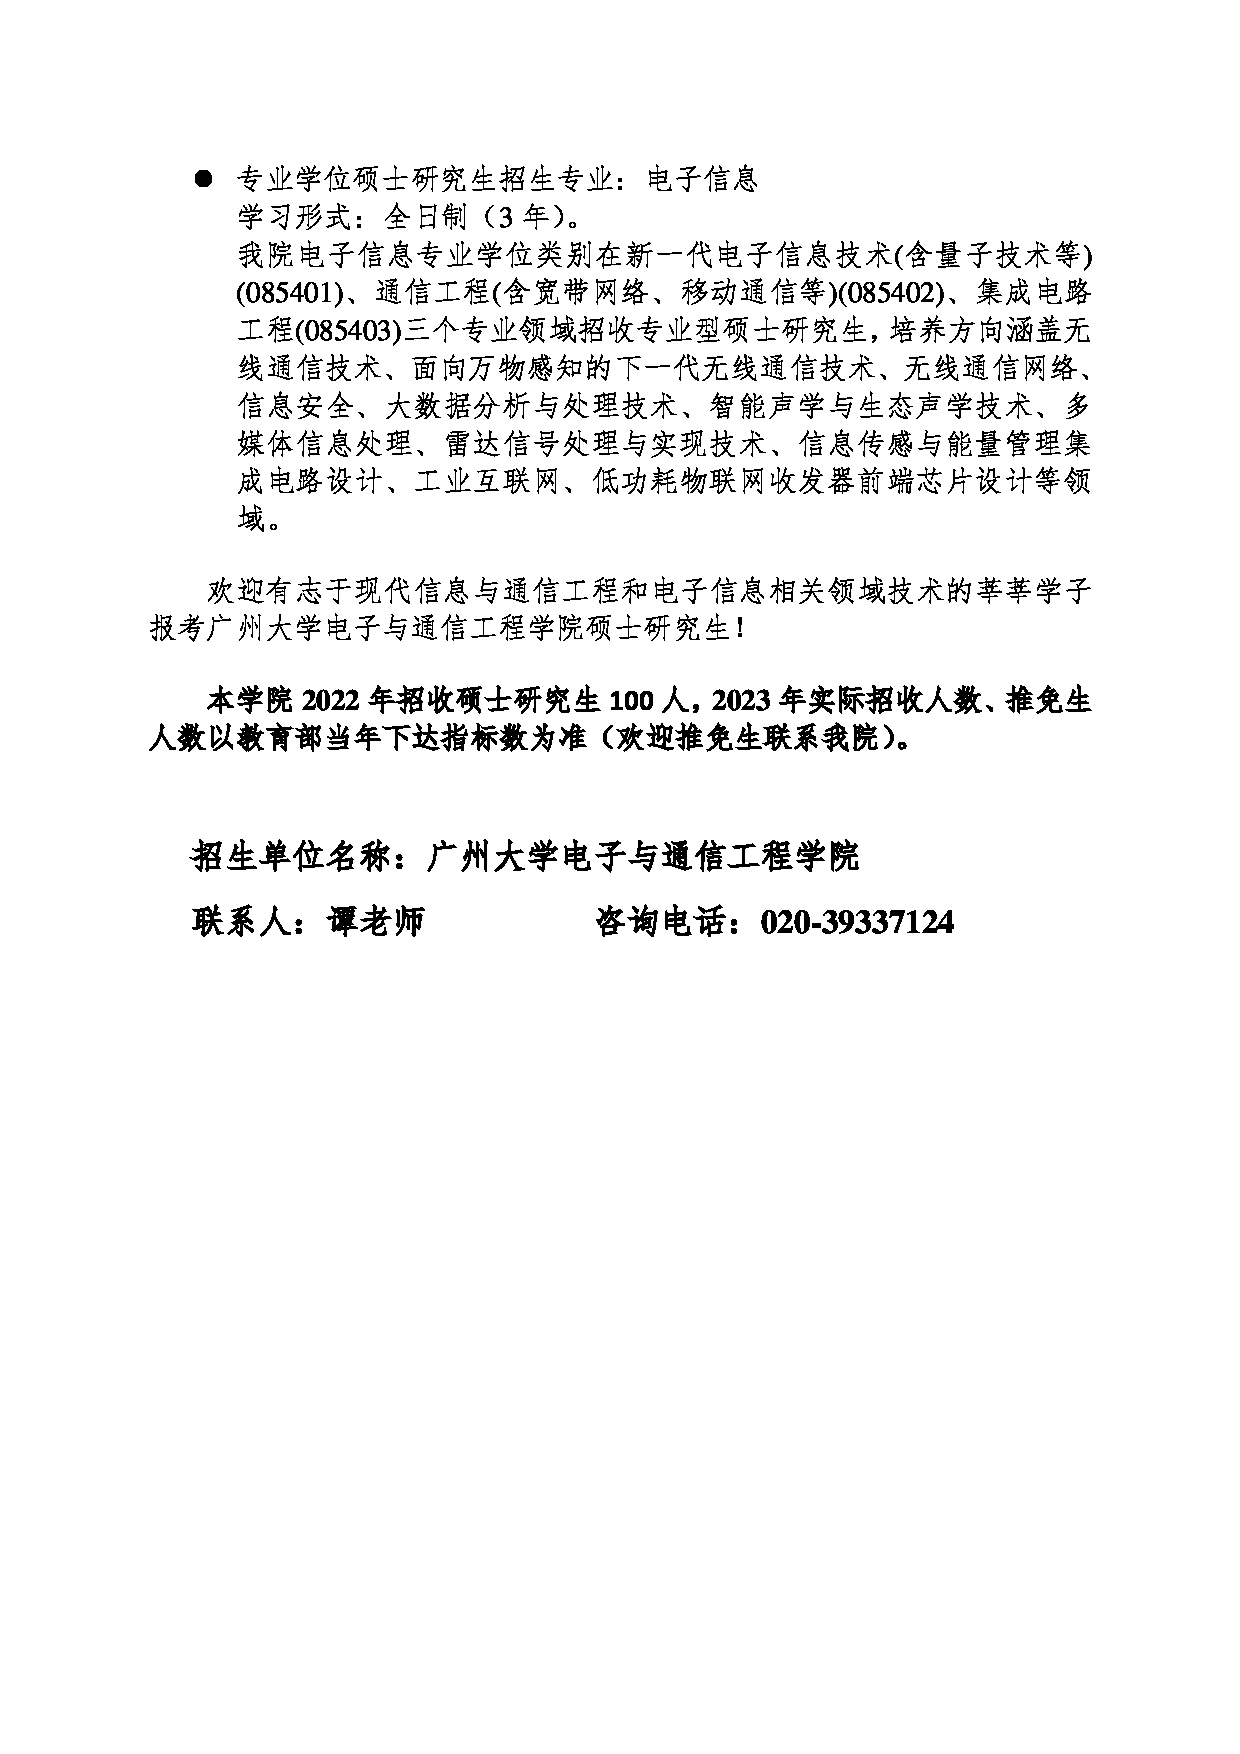 2023招生目录：广州大学2023年  19电子与通信工程学院 研究生考试招生目录第2页